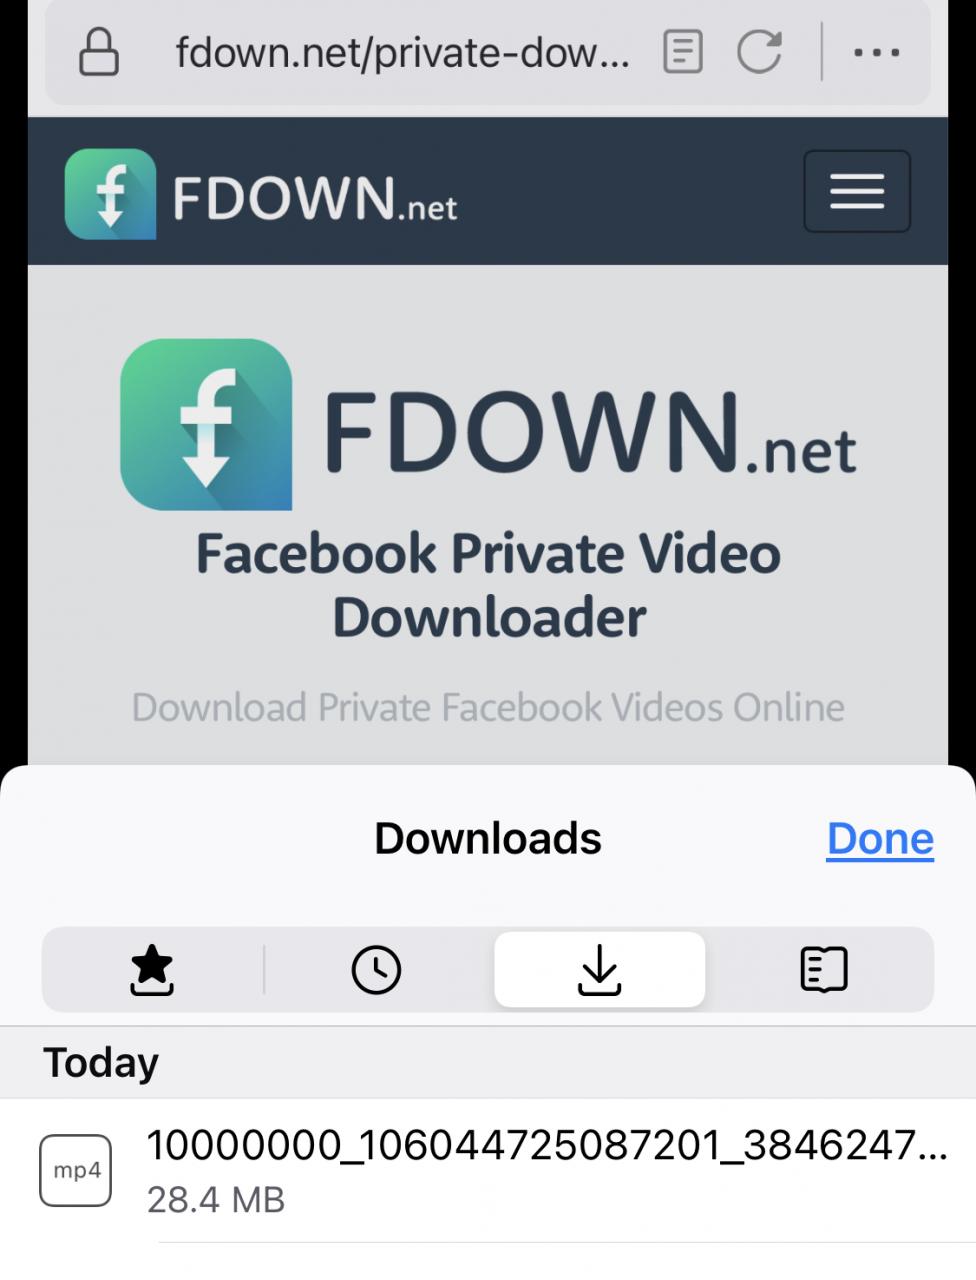 Fdown.net on Mobile Firefox